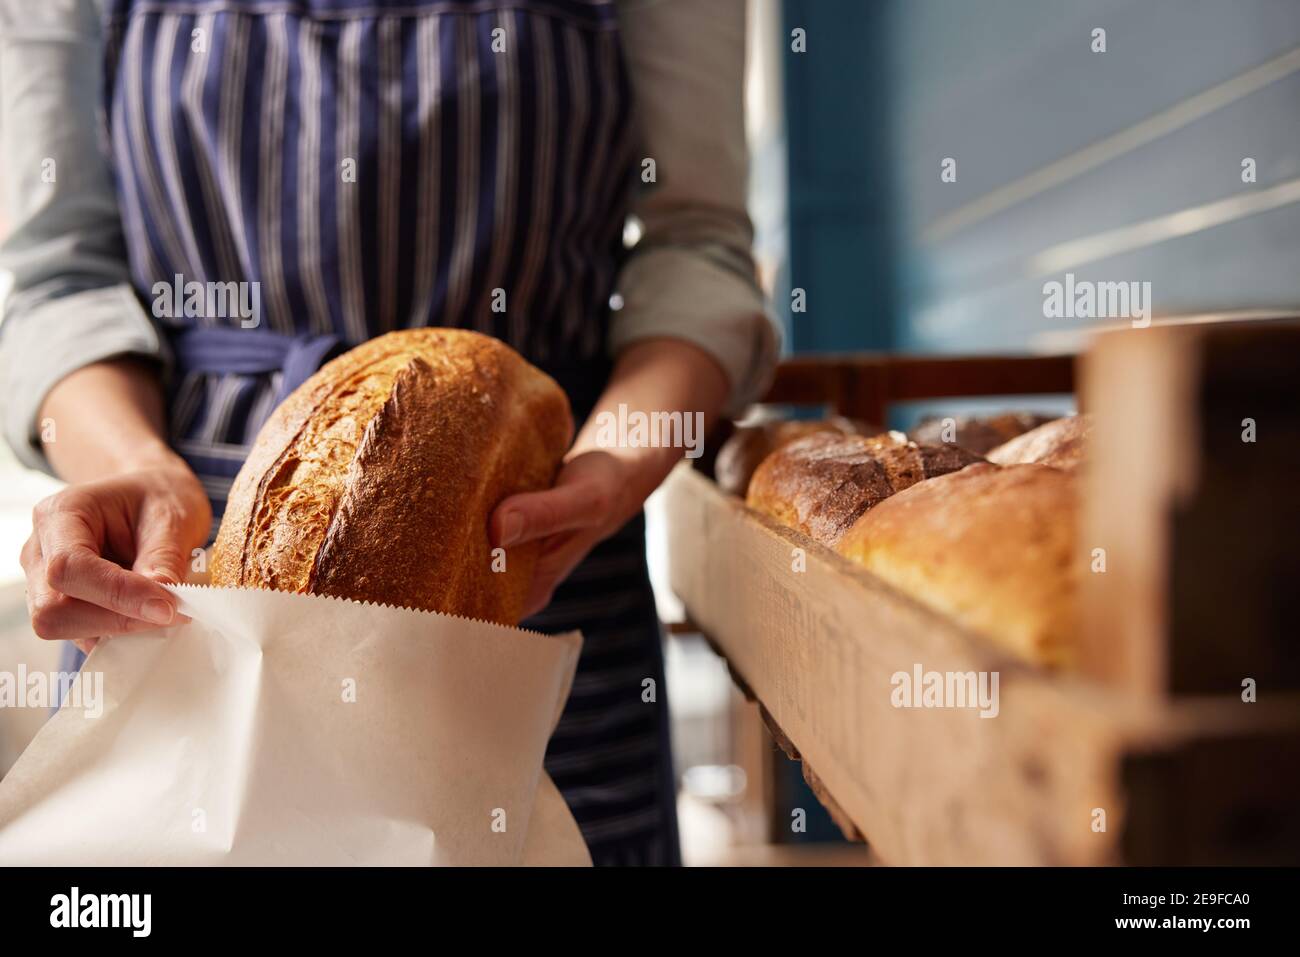 Asistente de ventas en panadería poniendo pan de masa orgánica recién horneado Haz un pan en una bolsa de papel sostenible Foto de stock